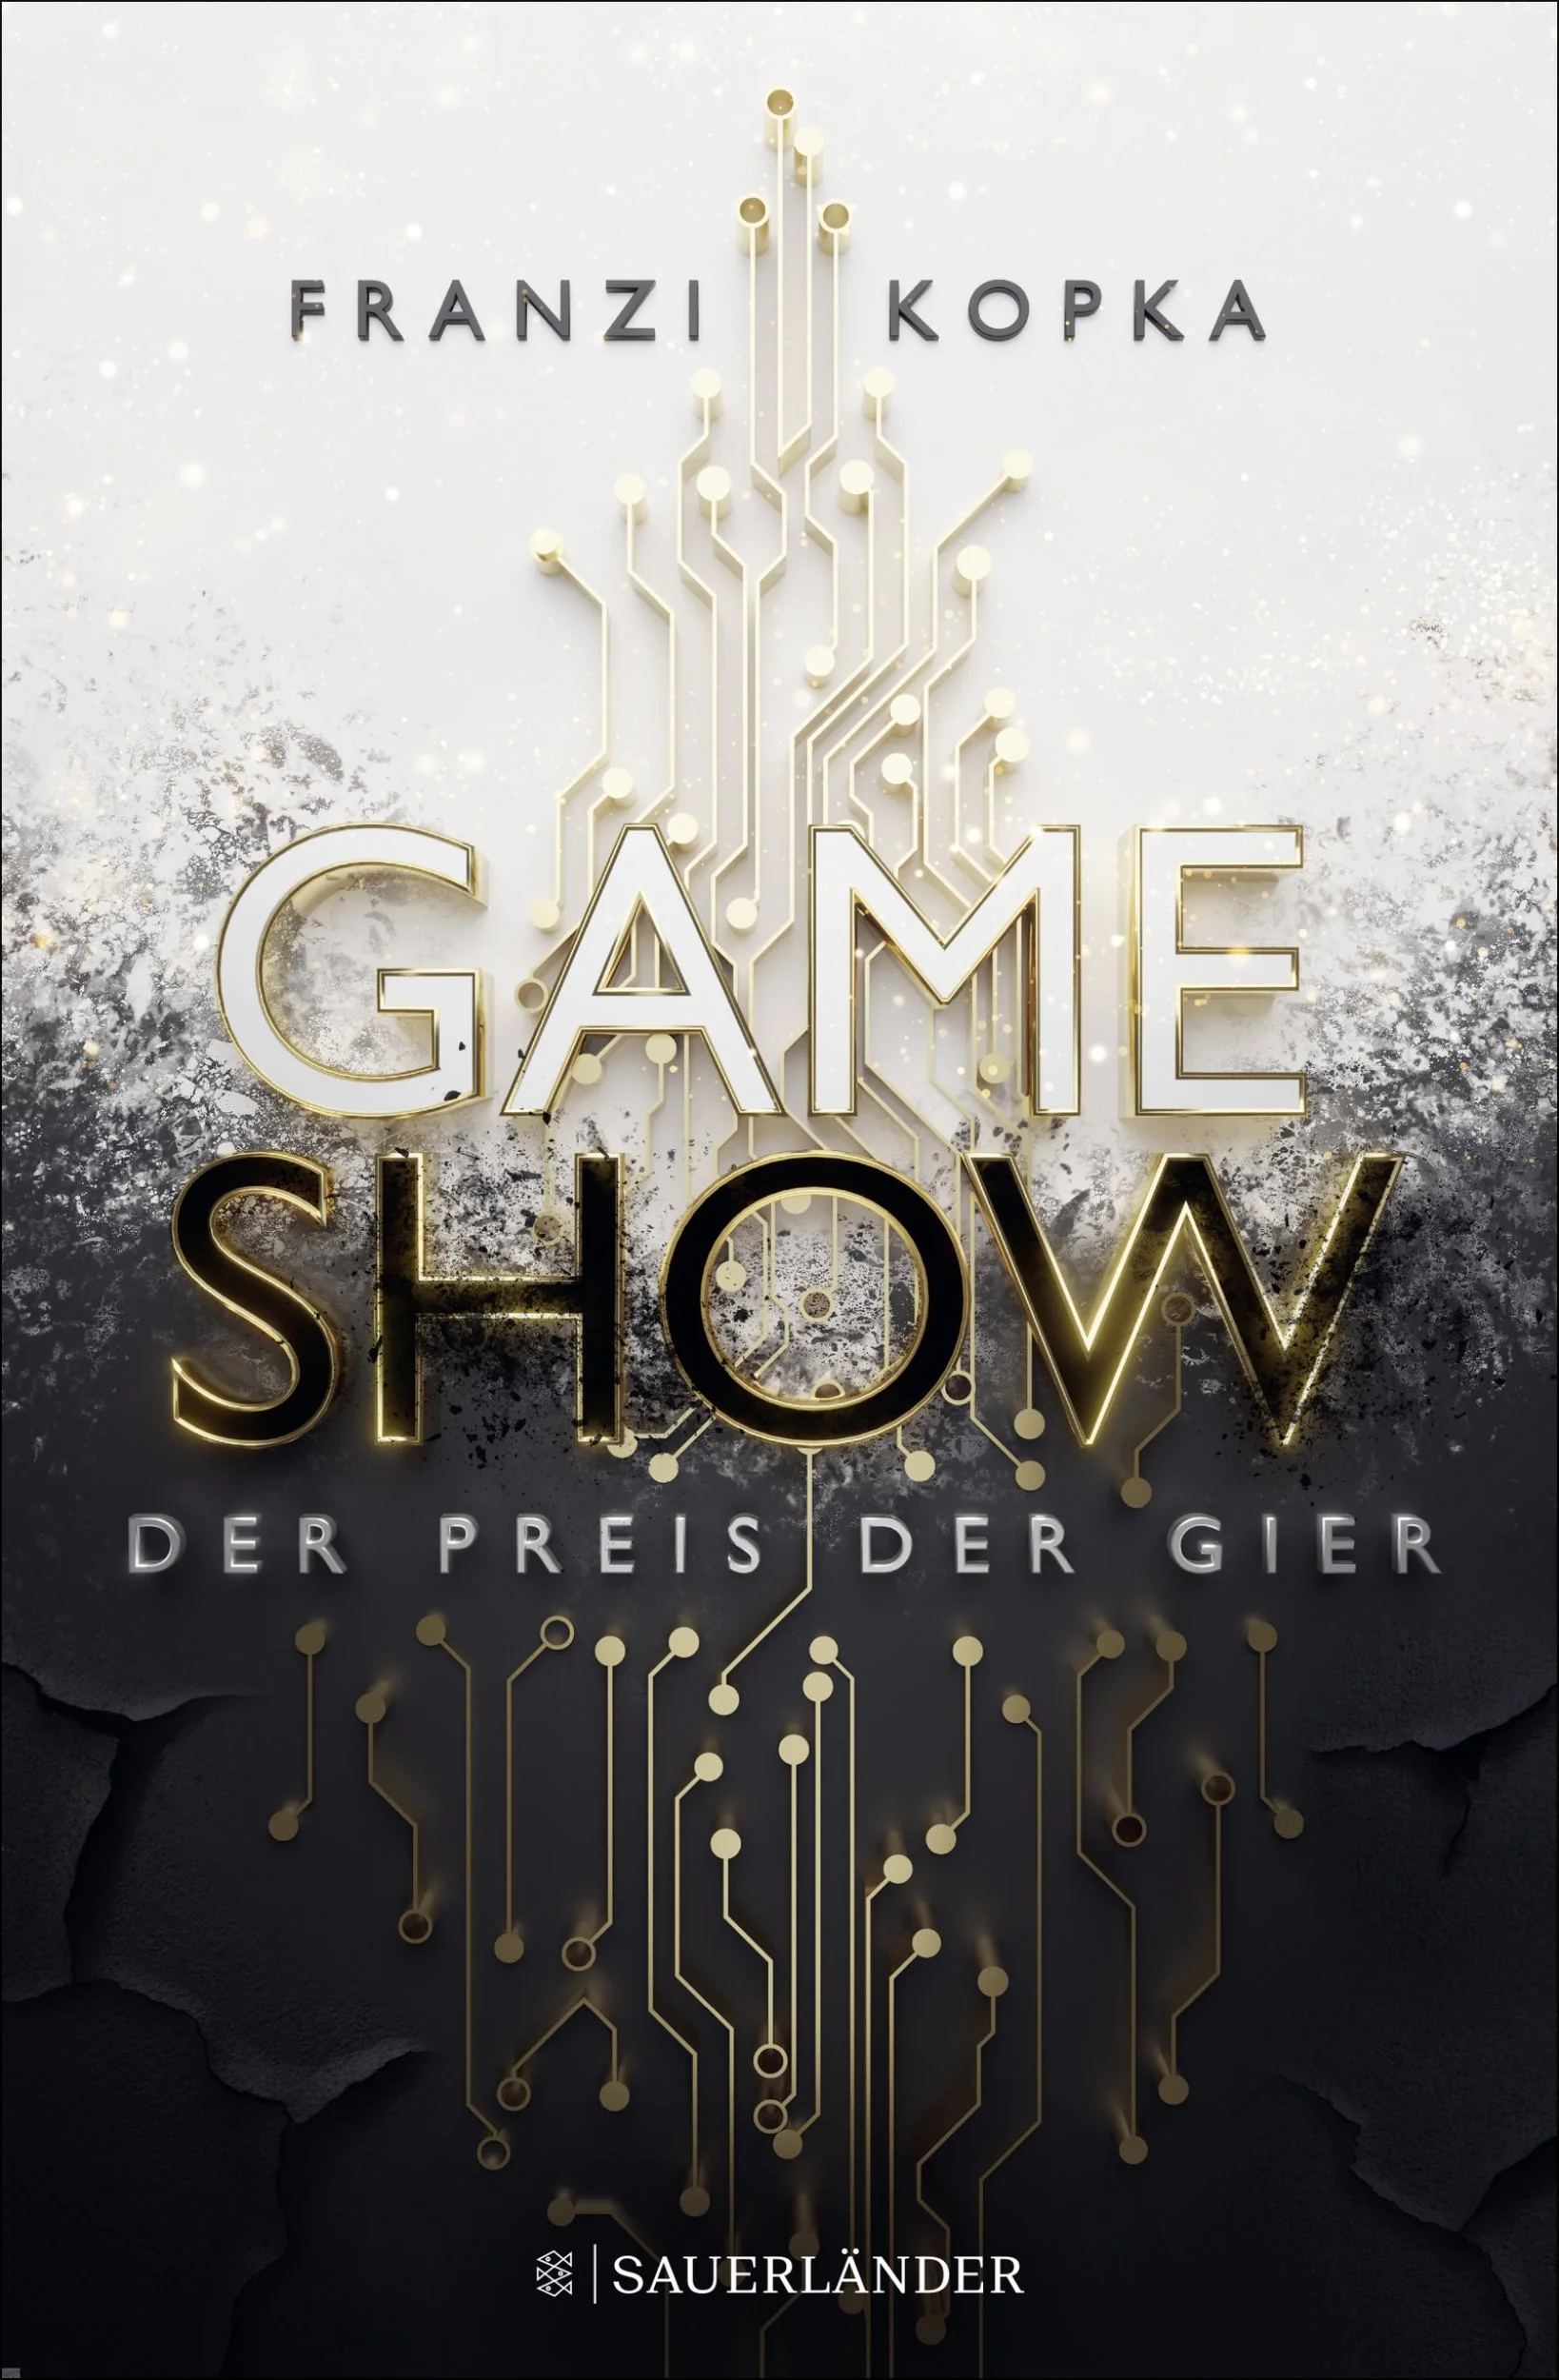 Franzi Kopka: Gameshow – Der Preis der Gier